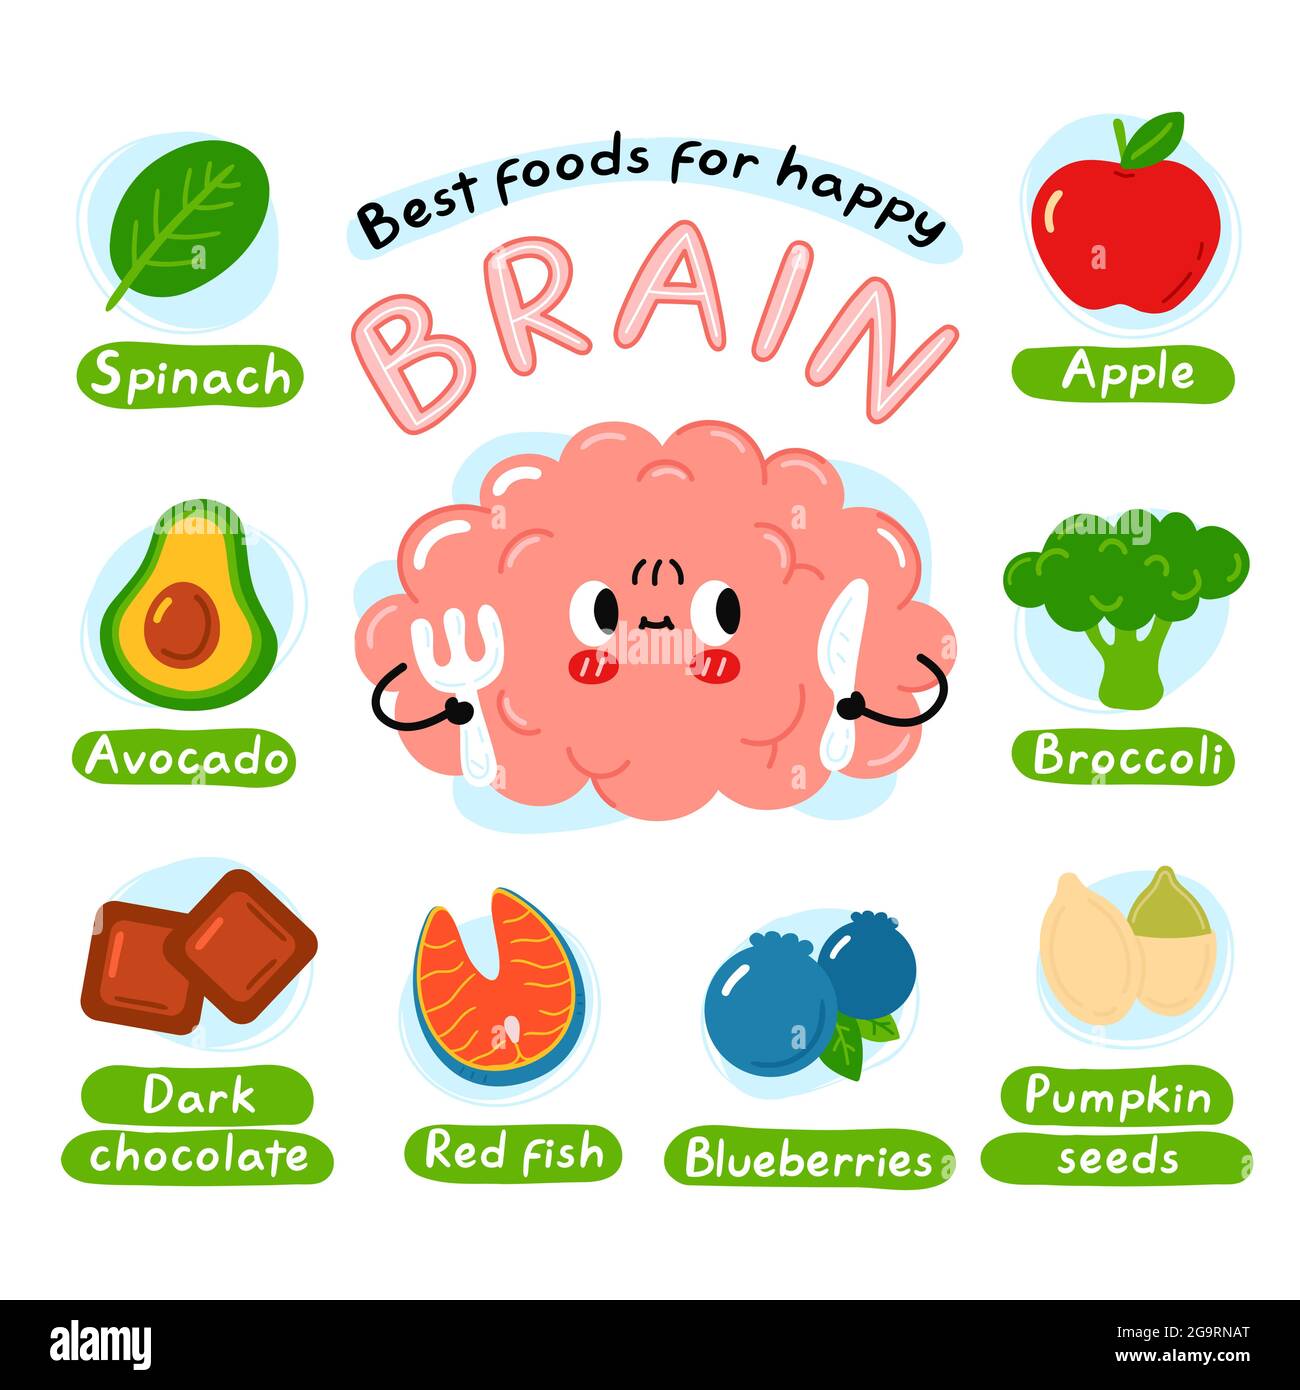 Infografik-Poster „Best Foods for Happy Brain“. Niedliche Gehirn Organ Charakter. Vektor Cartoon kawaii Figur Illustration Symbol. Isoliert auf weißem Hintergrund. Ernährung, gesunde Ernährung für den Geist Konzept Stock Vektor